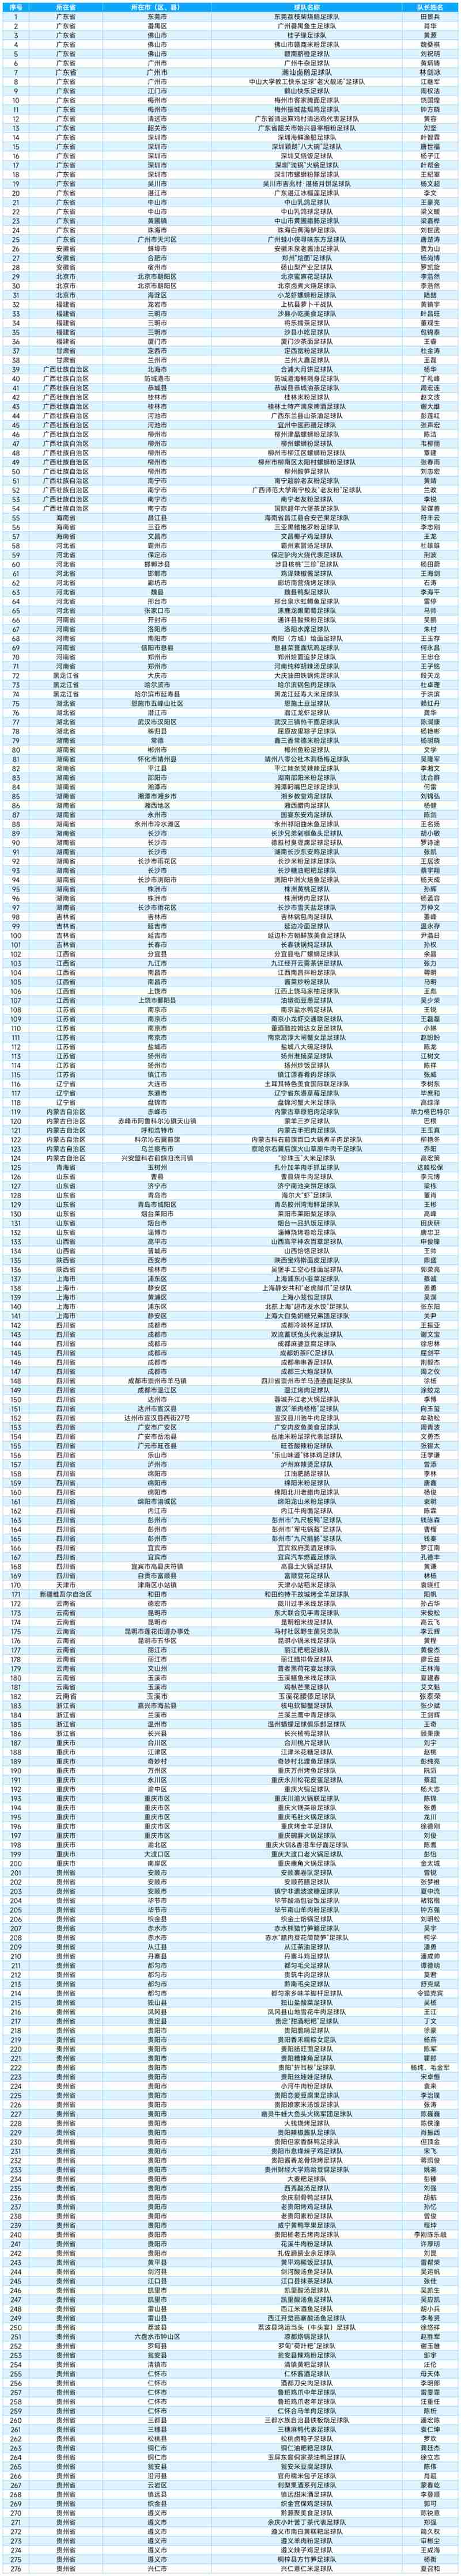 参赛队伍名单。图片由榕江县村超管理中心提供